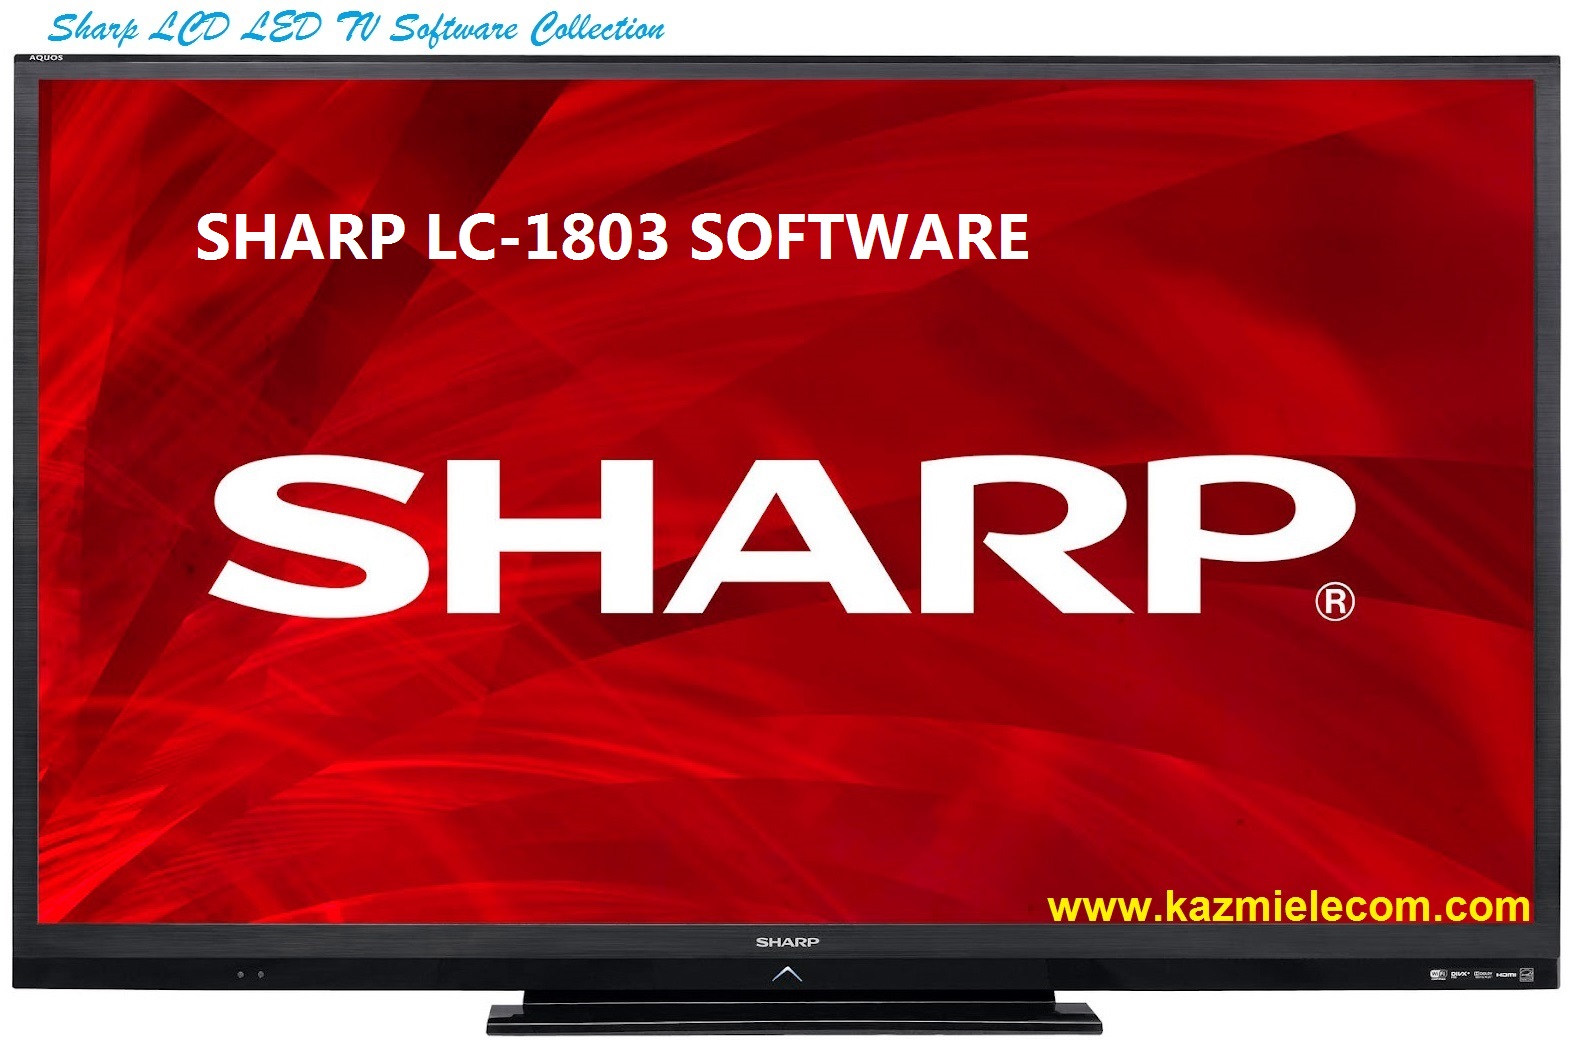 Sharp Lc-1803